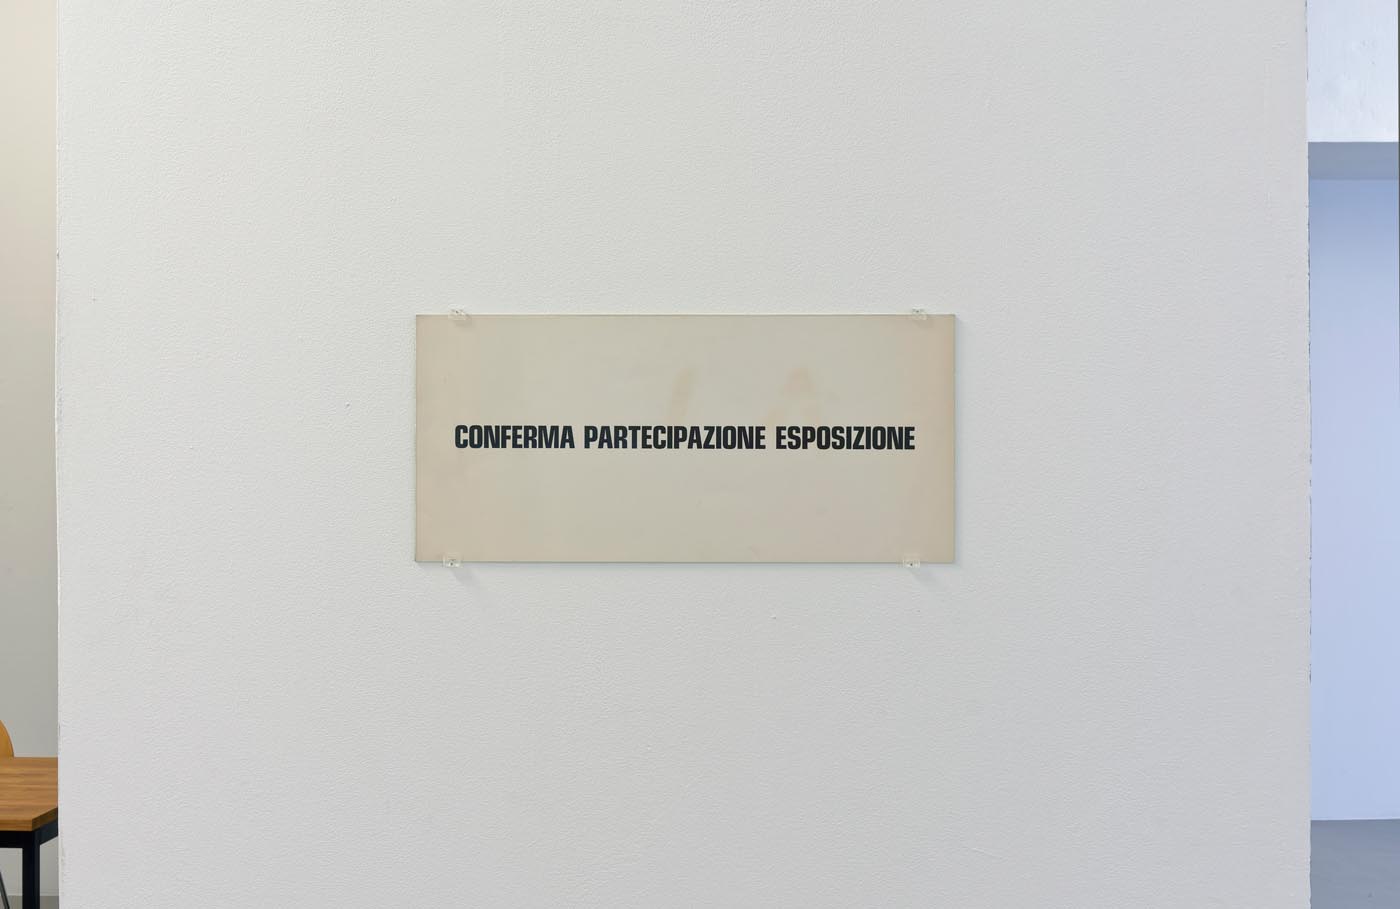 <p><em>Conferma partecipazione esposizione</em>, 1970, Emilio Prini. Courtesy: Archivo Emilio Prini, Turin.</p>